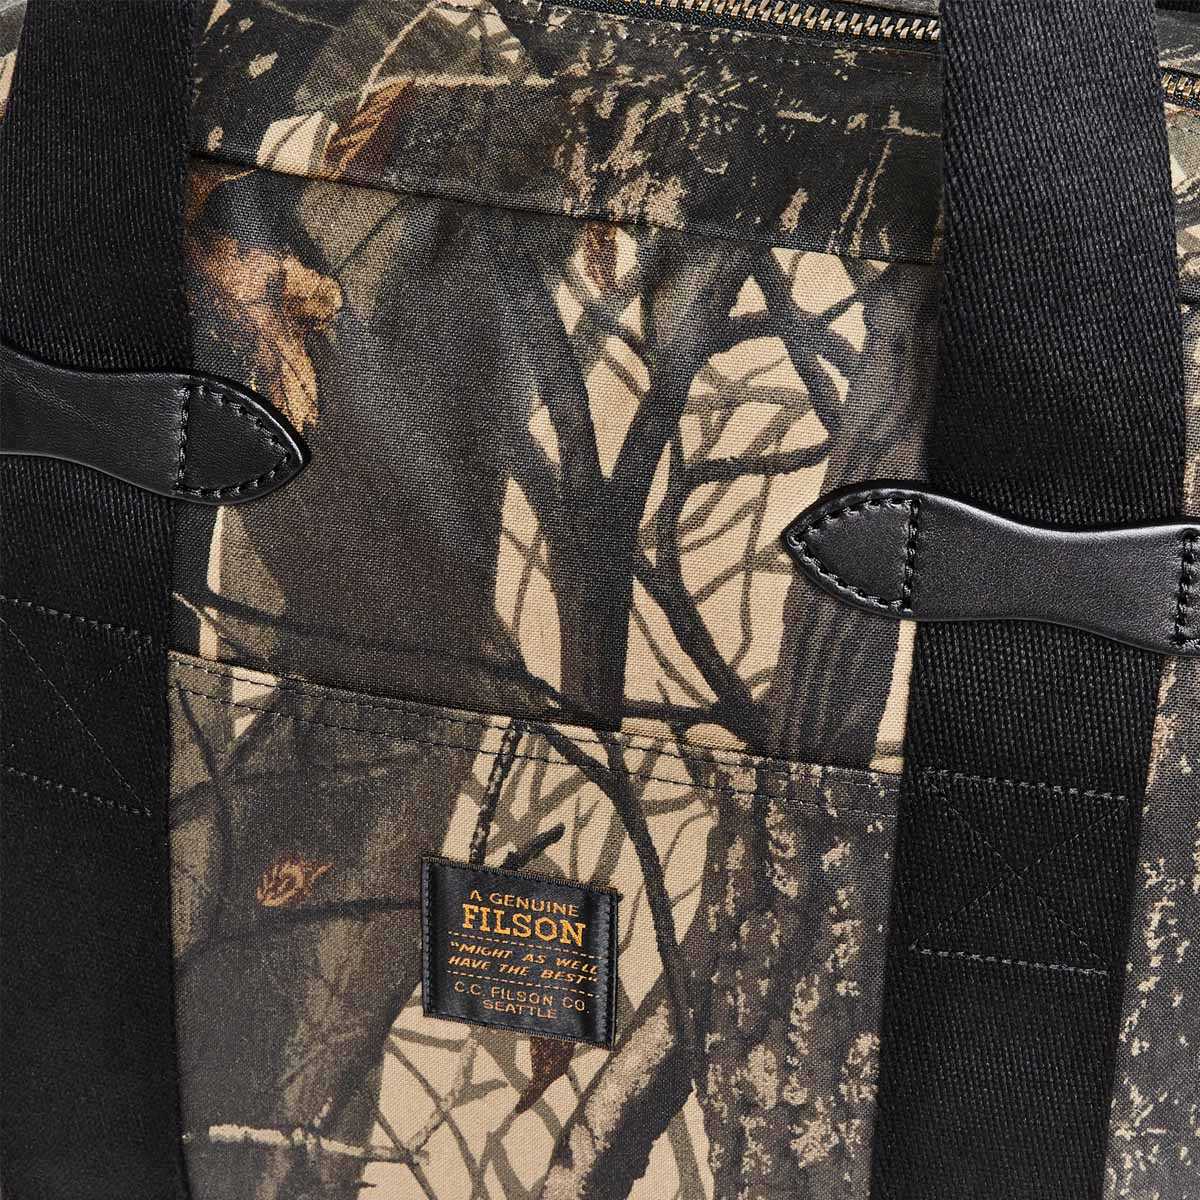 Filson Tin Cloth Tote Bag With Zipper Realtree Hardwoods Camo, eine Tragetasche aus gewachstem Canvas, die sich bequem über der Schulter tragen lässt